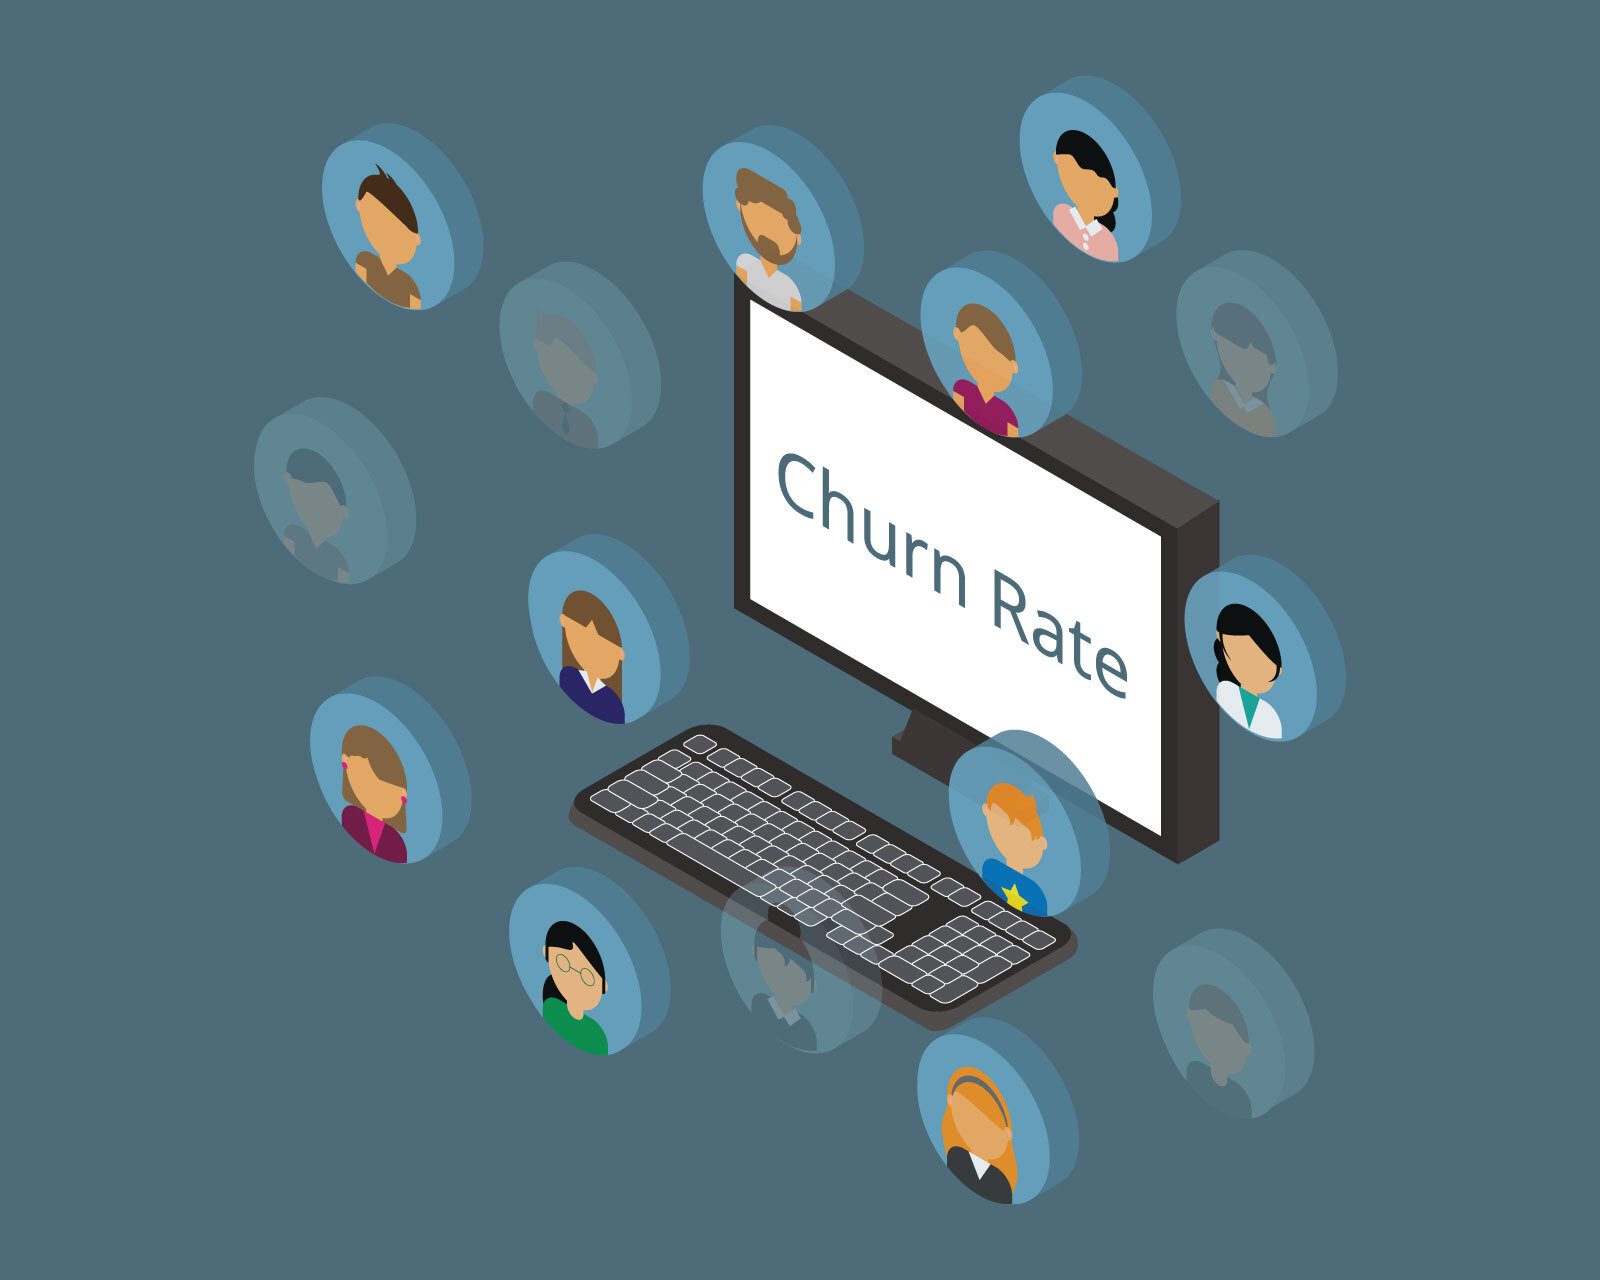 churn rate